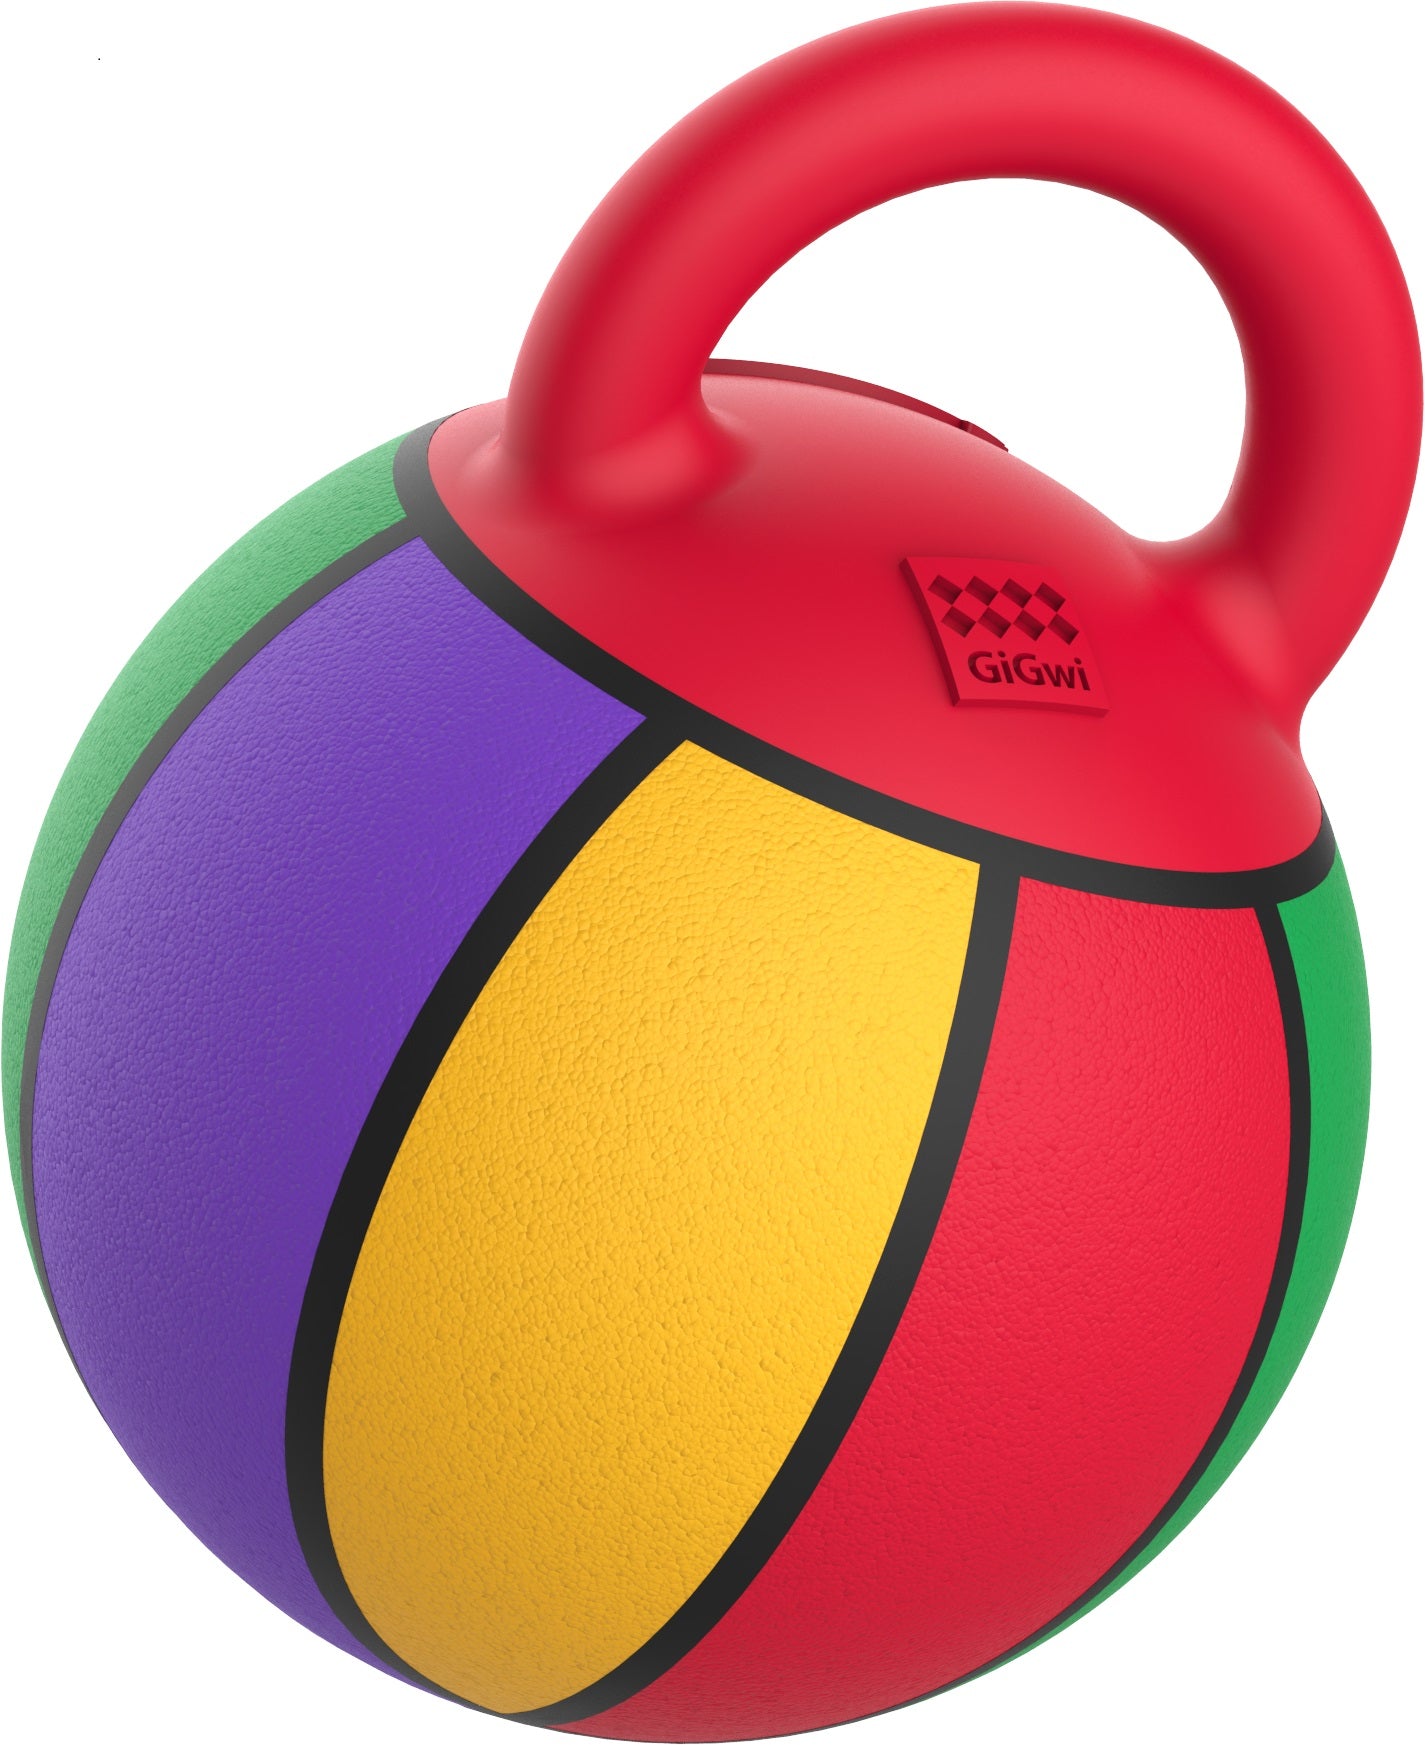 GiGwi 'Jumball ' Basketball Ball with Rubber Handle Small